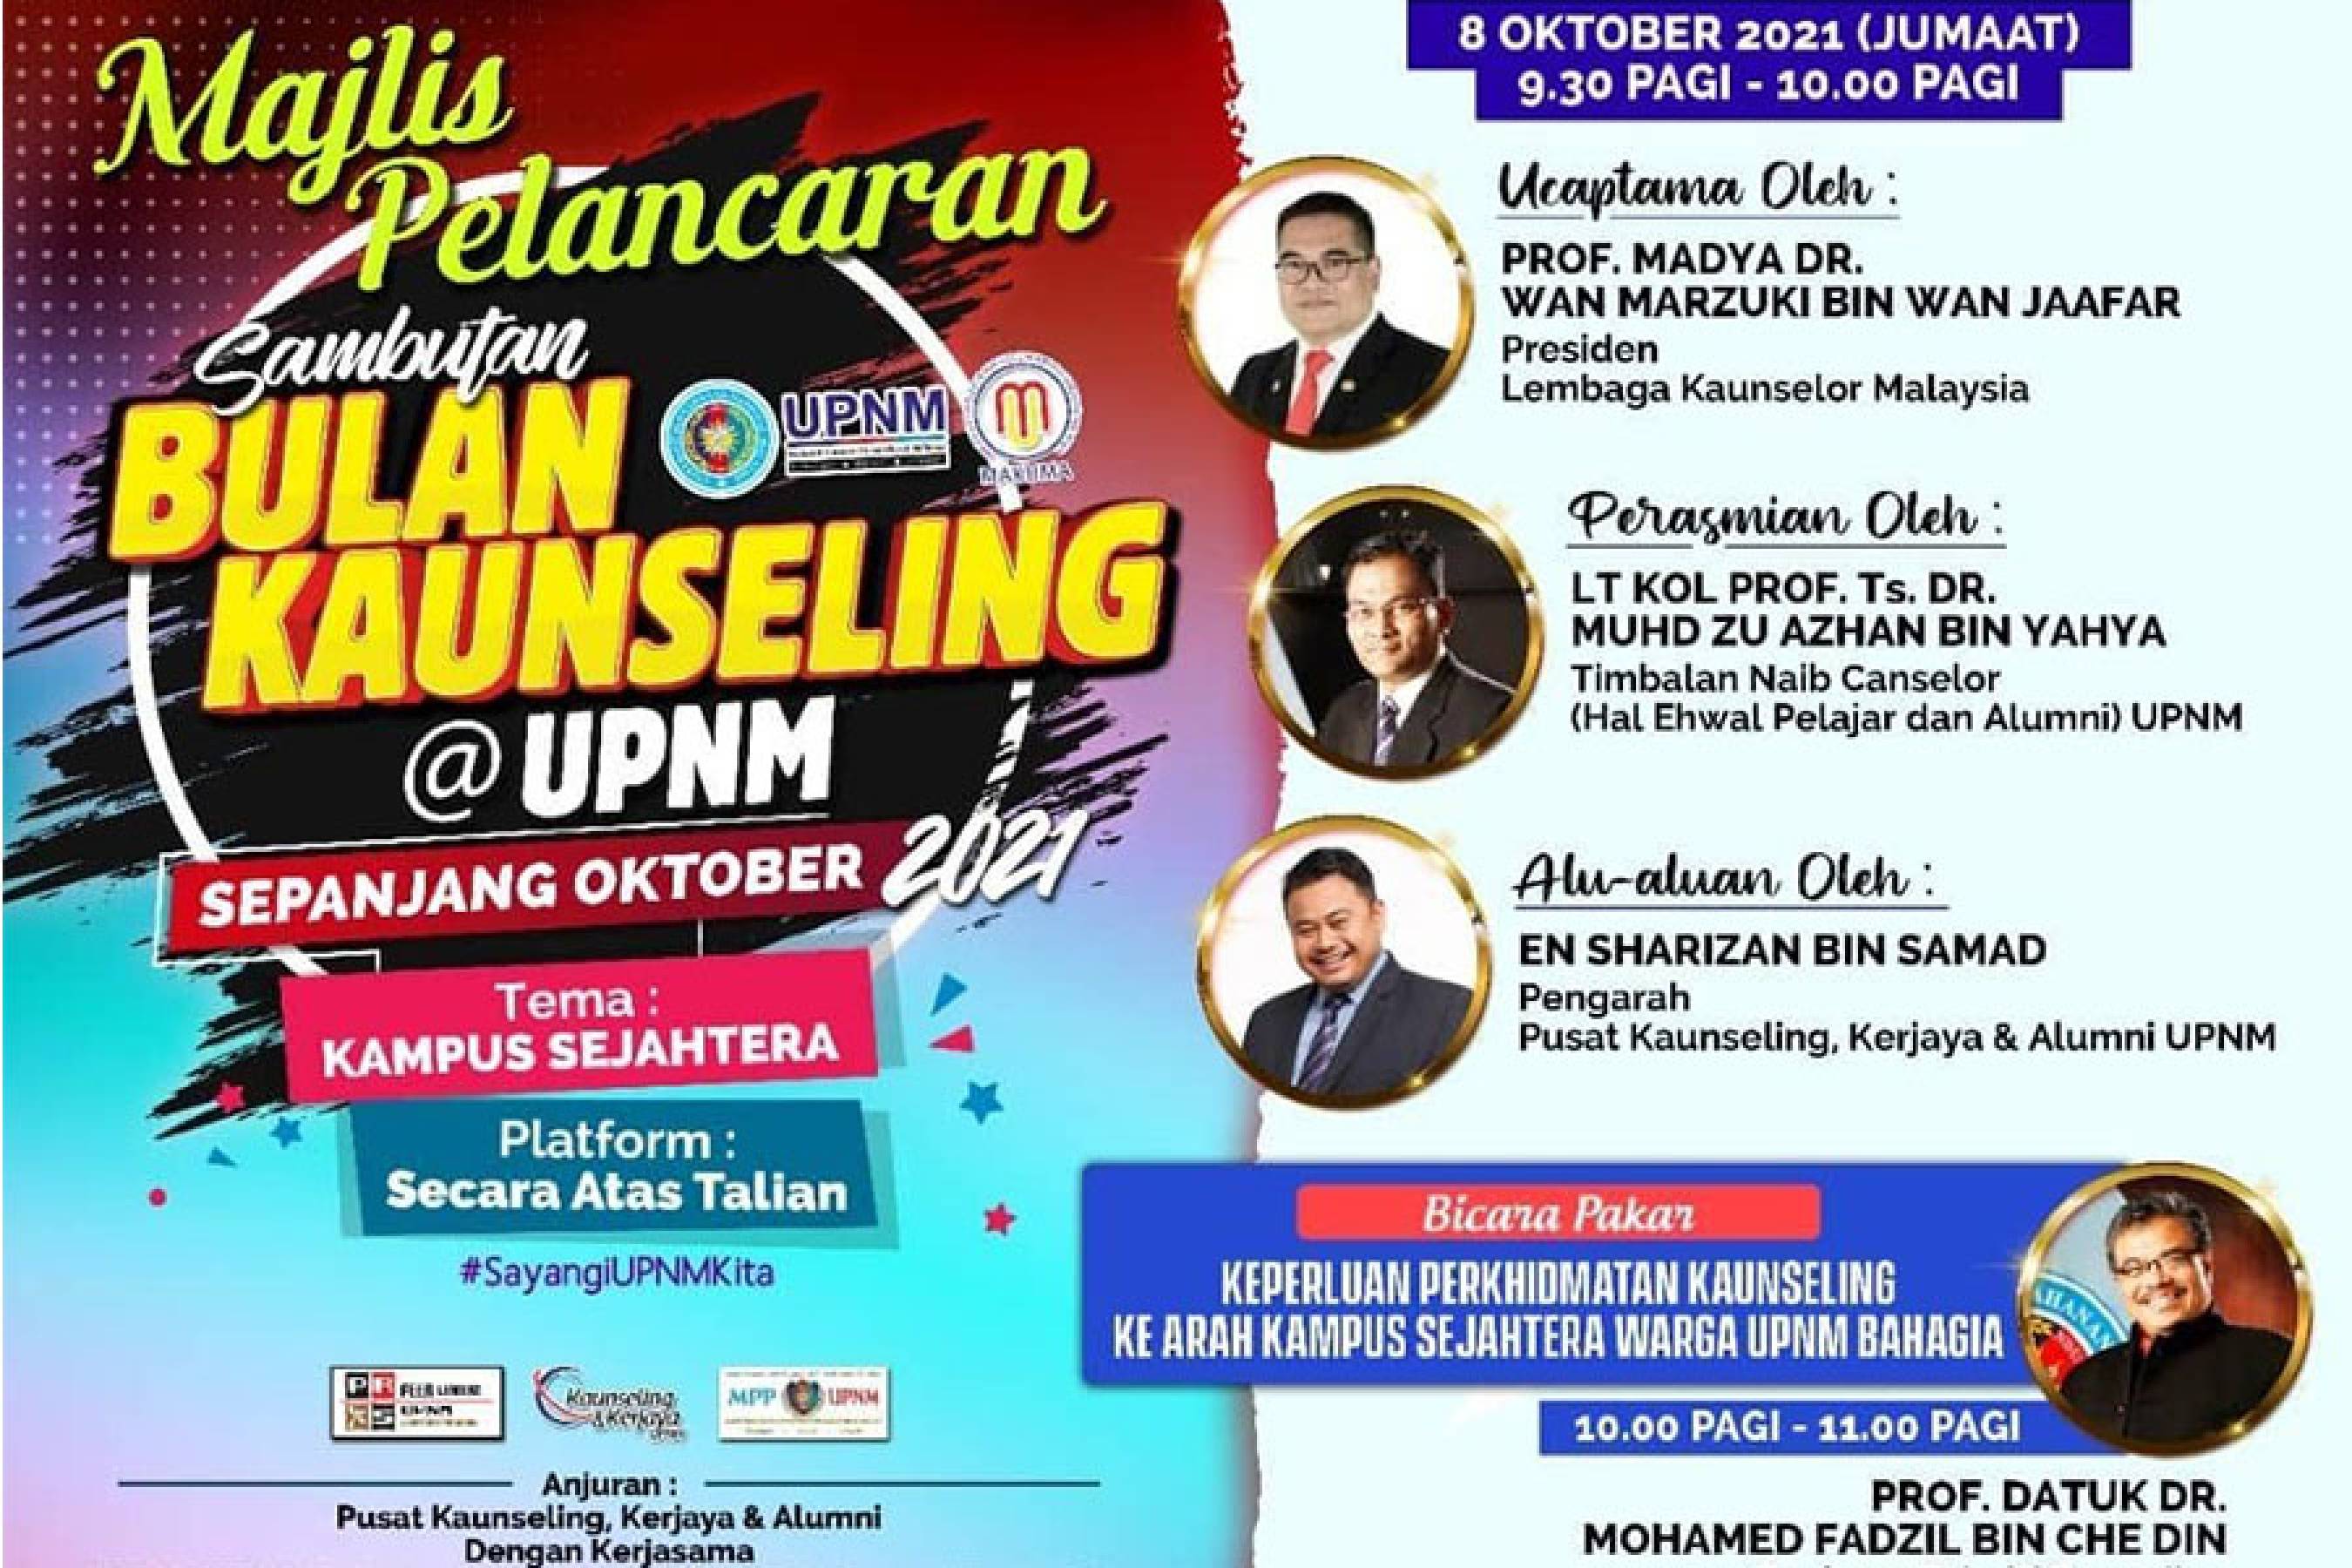 Majlis Pelancaran Sambutan Bulan Kaunseling 2021 @ UPNM & Forum Bicara Pakar